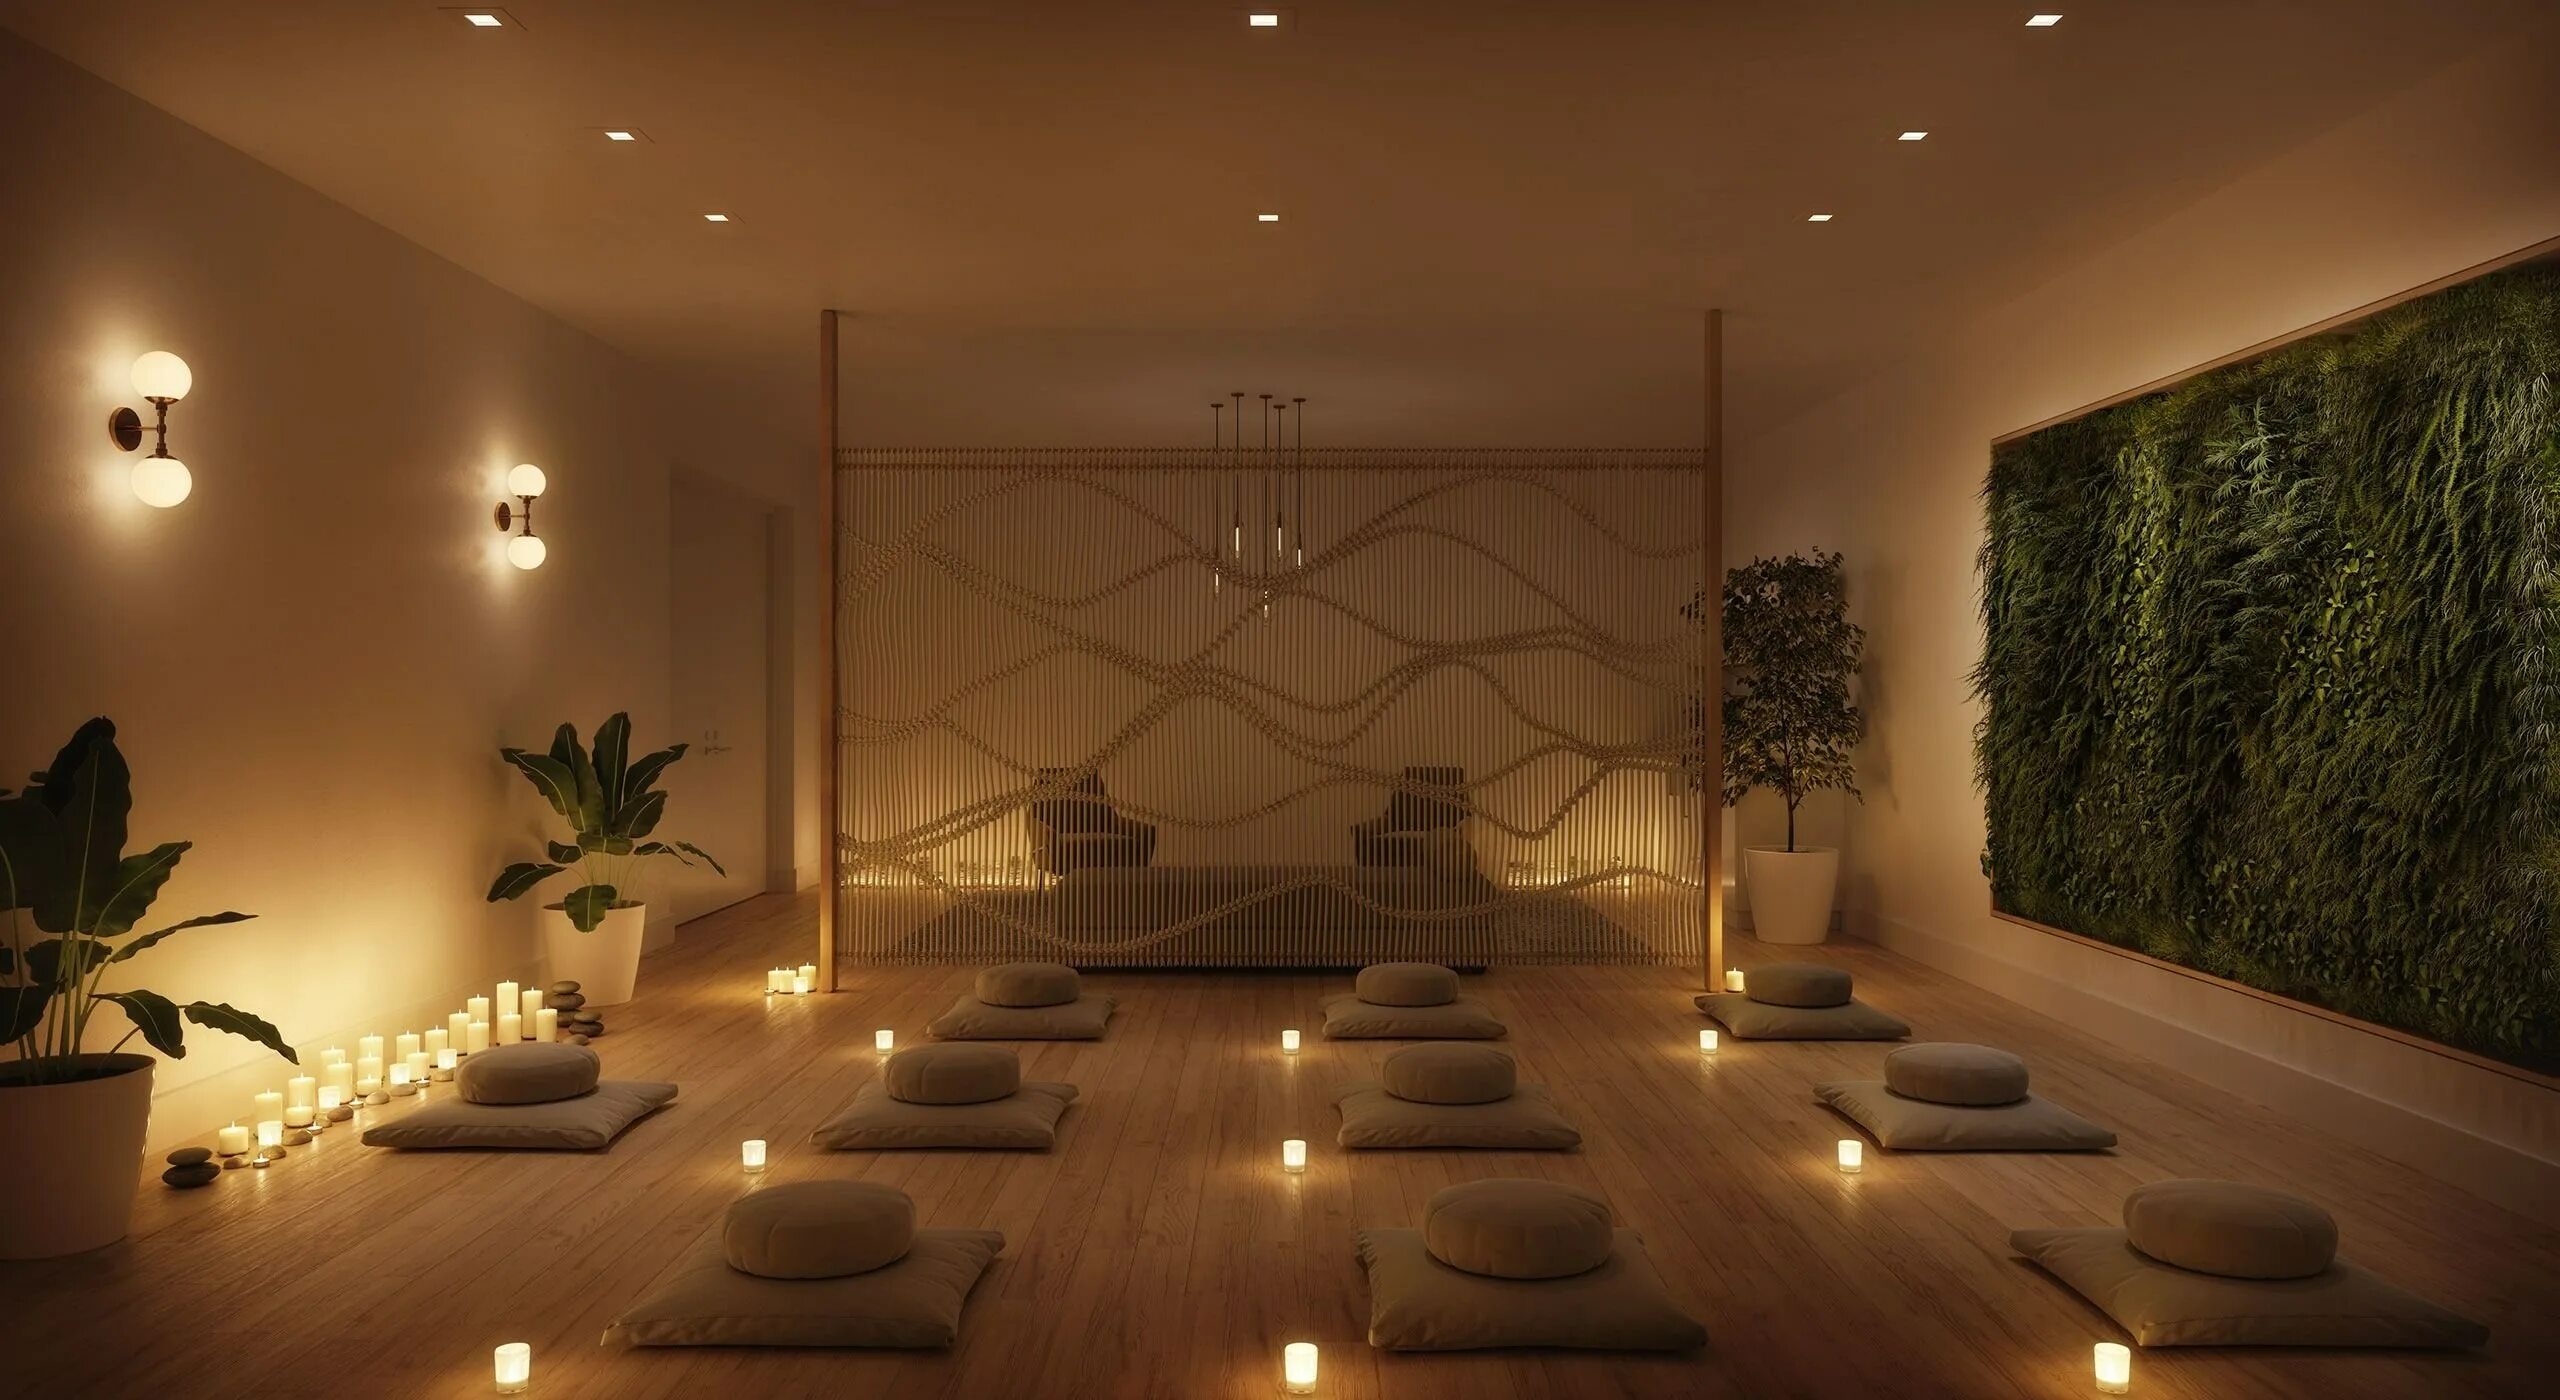 Спа зал. Комната для медитации в доме. Комната для релаксации интерьер. Интерьер комнаты для медитации. Помещение для медитации.